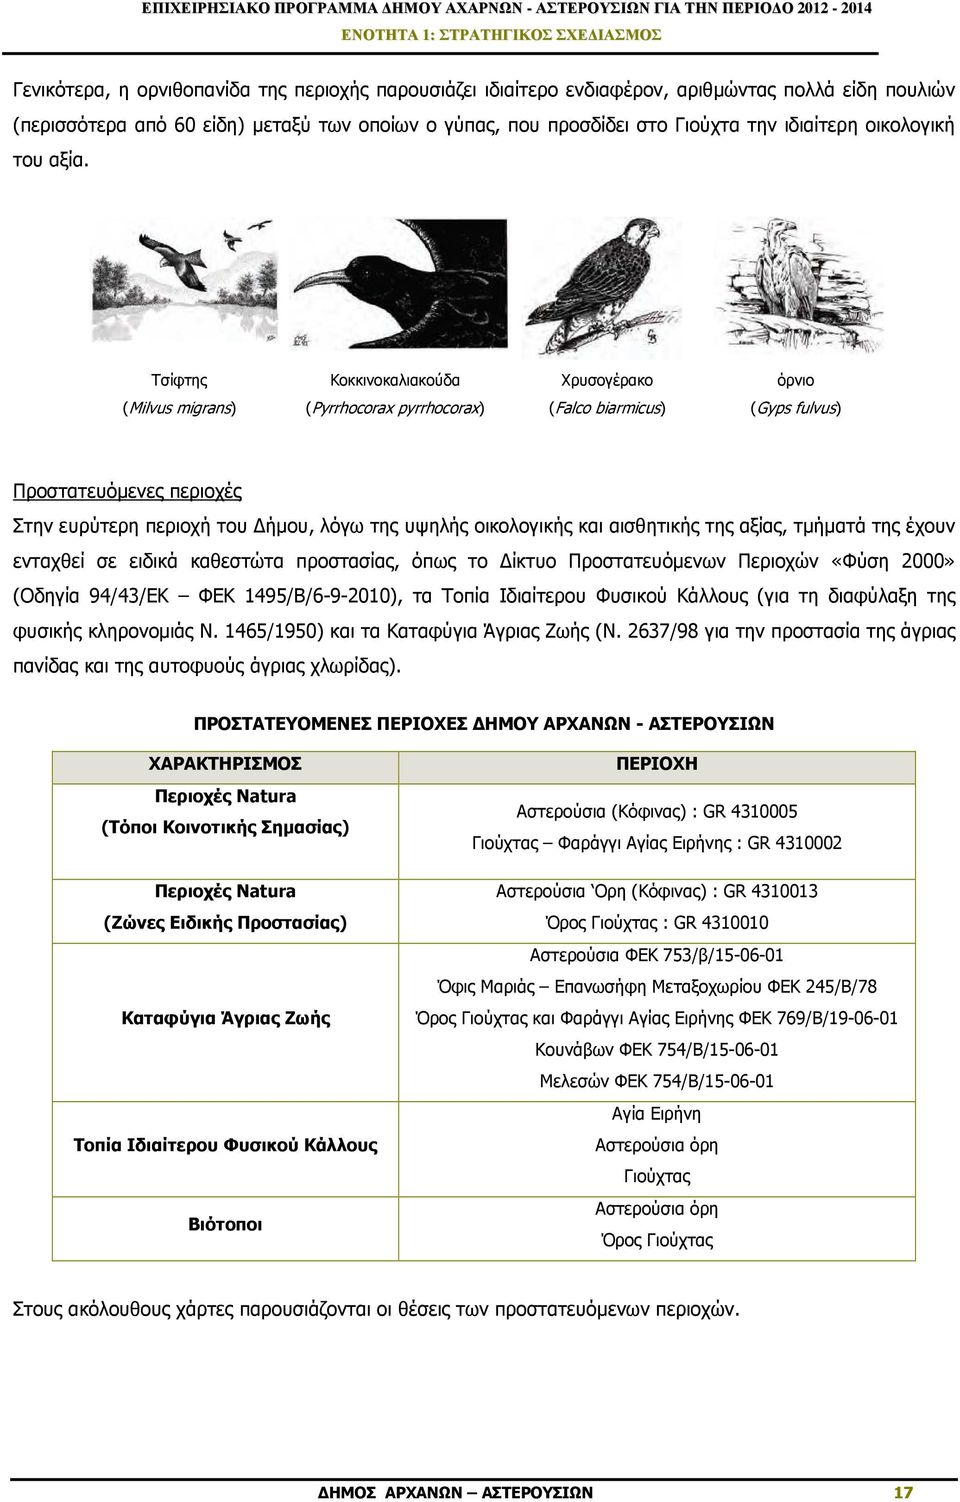 Τσίφτης Κοκκινοκαλιακούδα Χρυσογέρακο όρνιο (Milvus migrans) (Pyrrhocorax pyrrhocorax) (Falco biarmicus) (Gyps fulvus) Προστατευόµενες περιοχές Στην ευρύτερη περιοχή του ήµου, λόγω της υψηλής